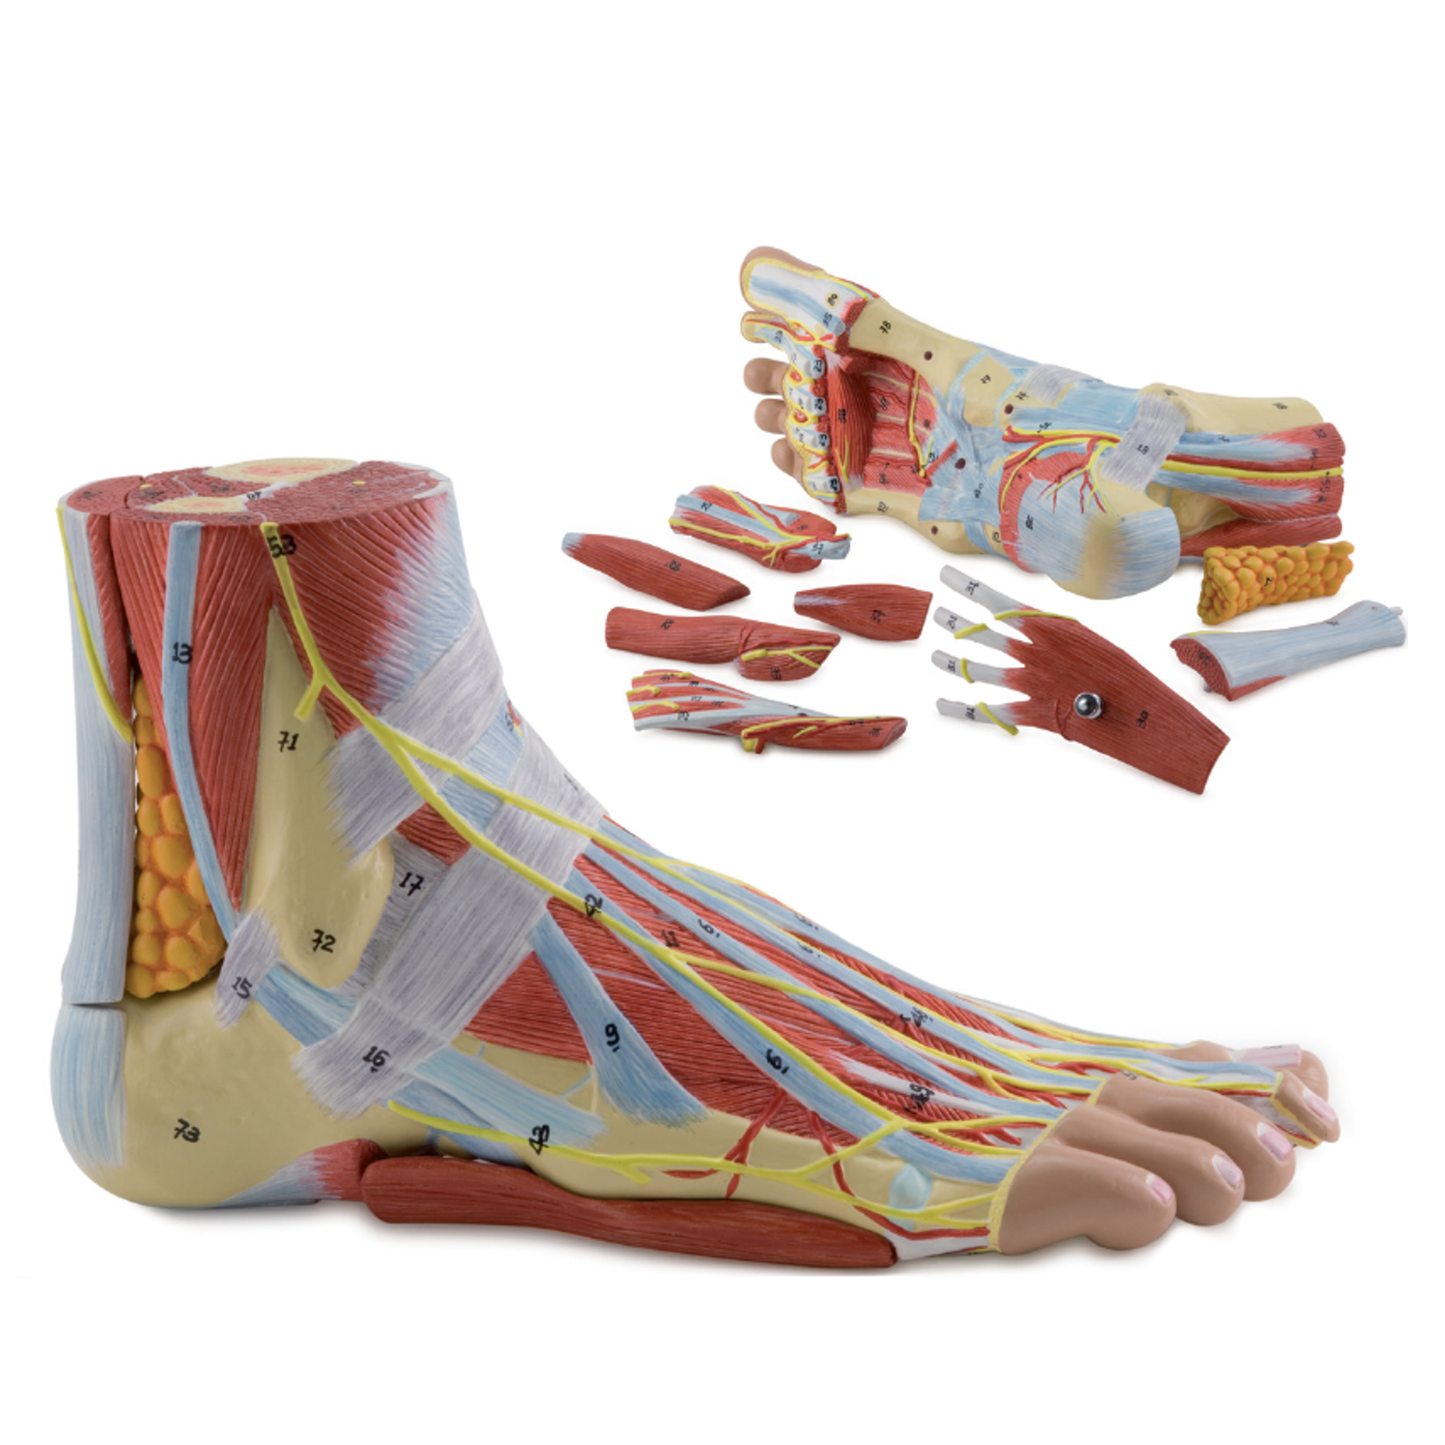 Komplet fodmodel med ledbånd, muskler, kar og nerver - kan adskilles i 9 dele